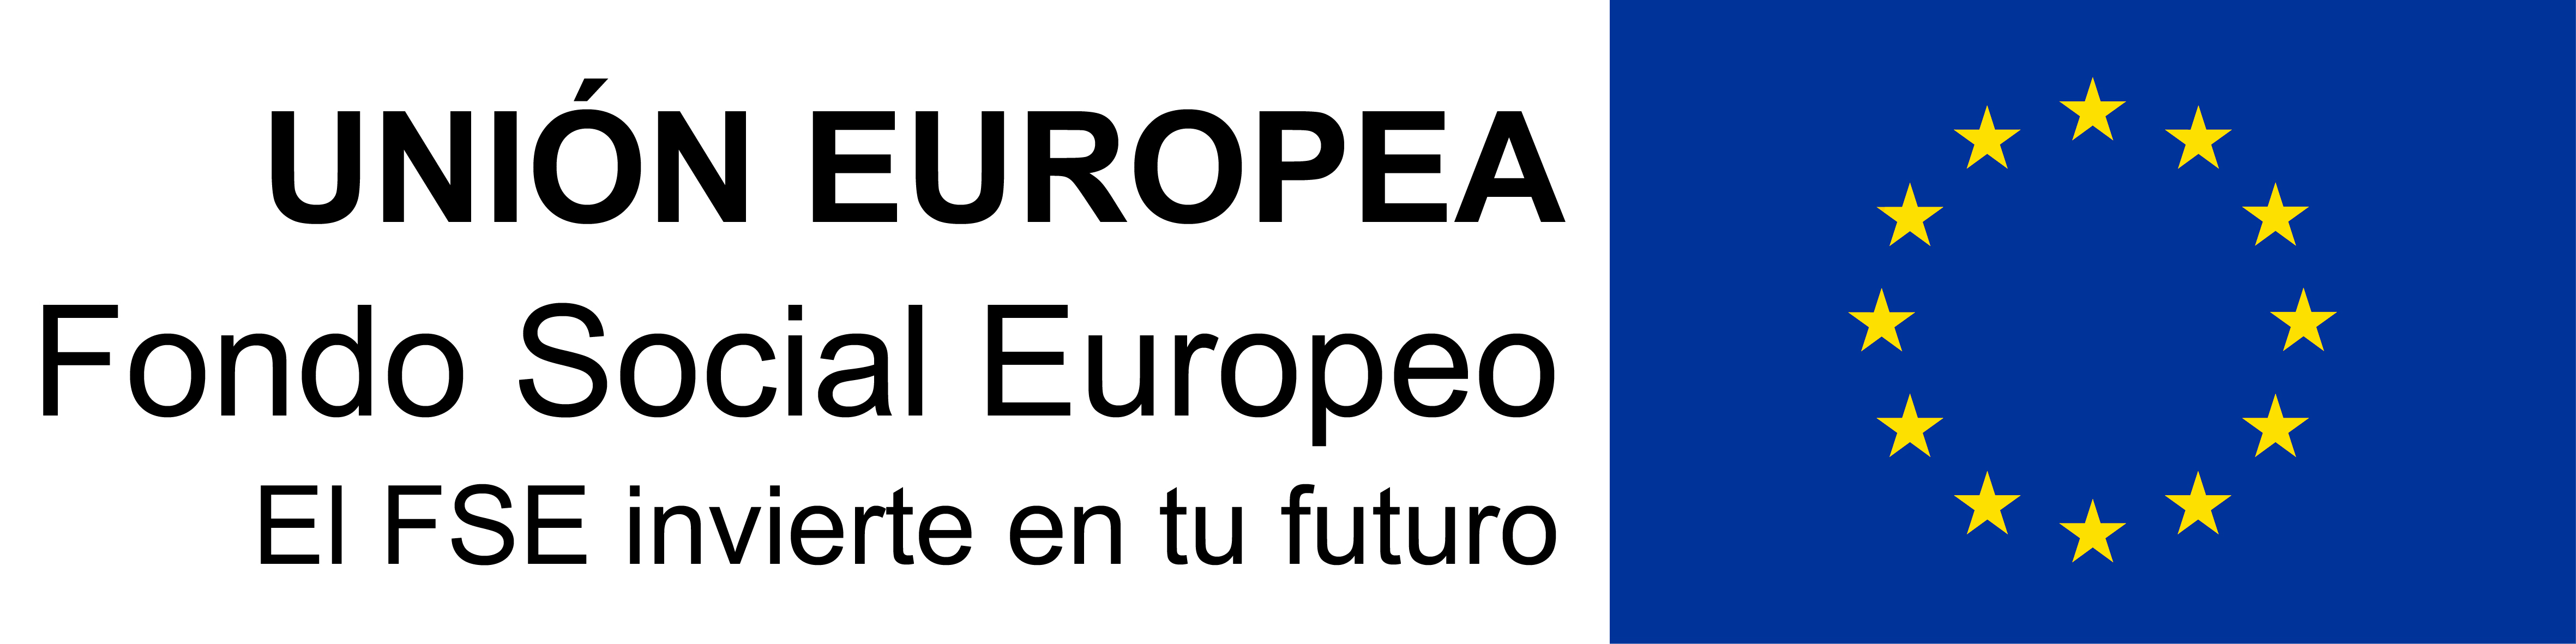 Union Europea FSE invierte en tu futuro